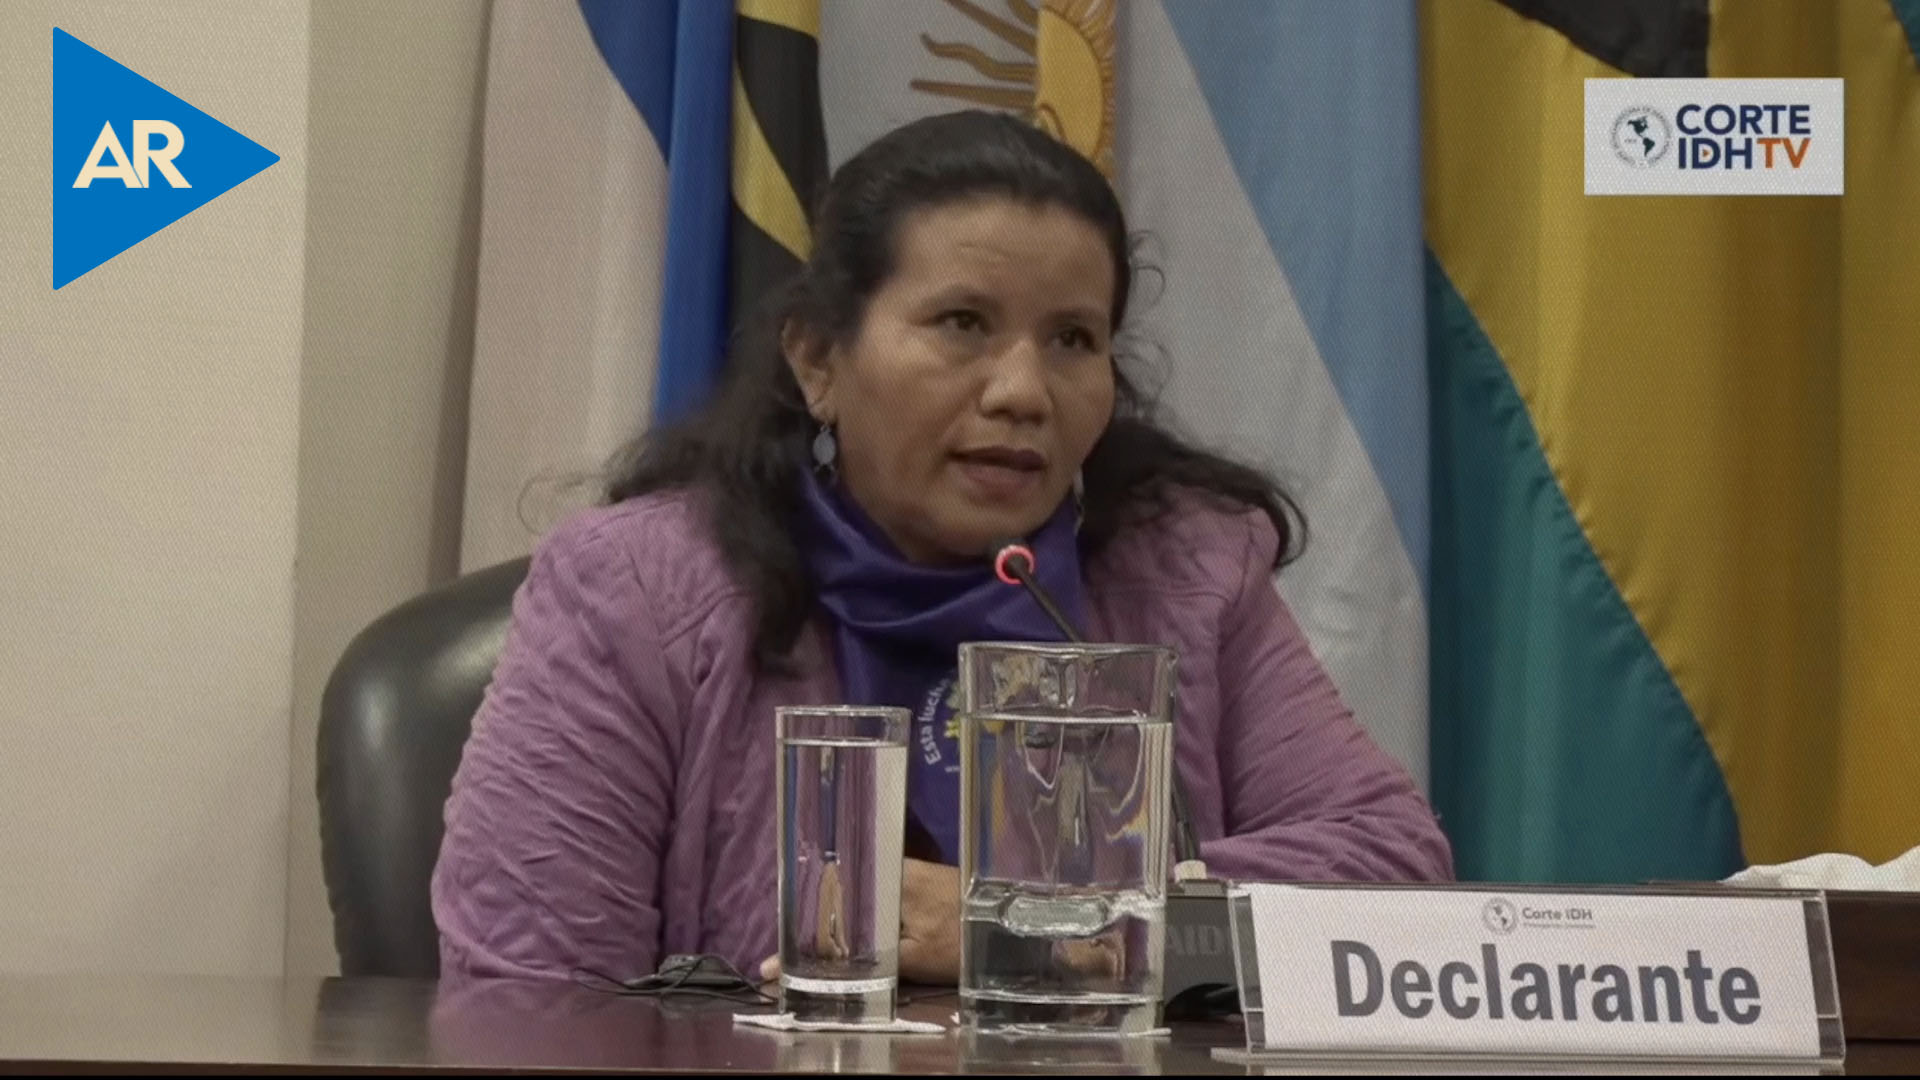 Mamá de Beatriz declara ante la Corte IDH en caso contra El Salvador por aborto terapéutico